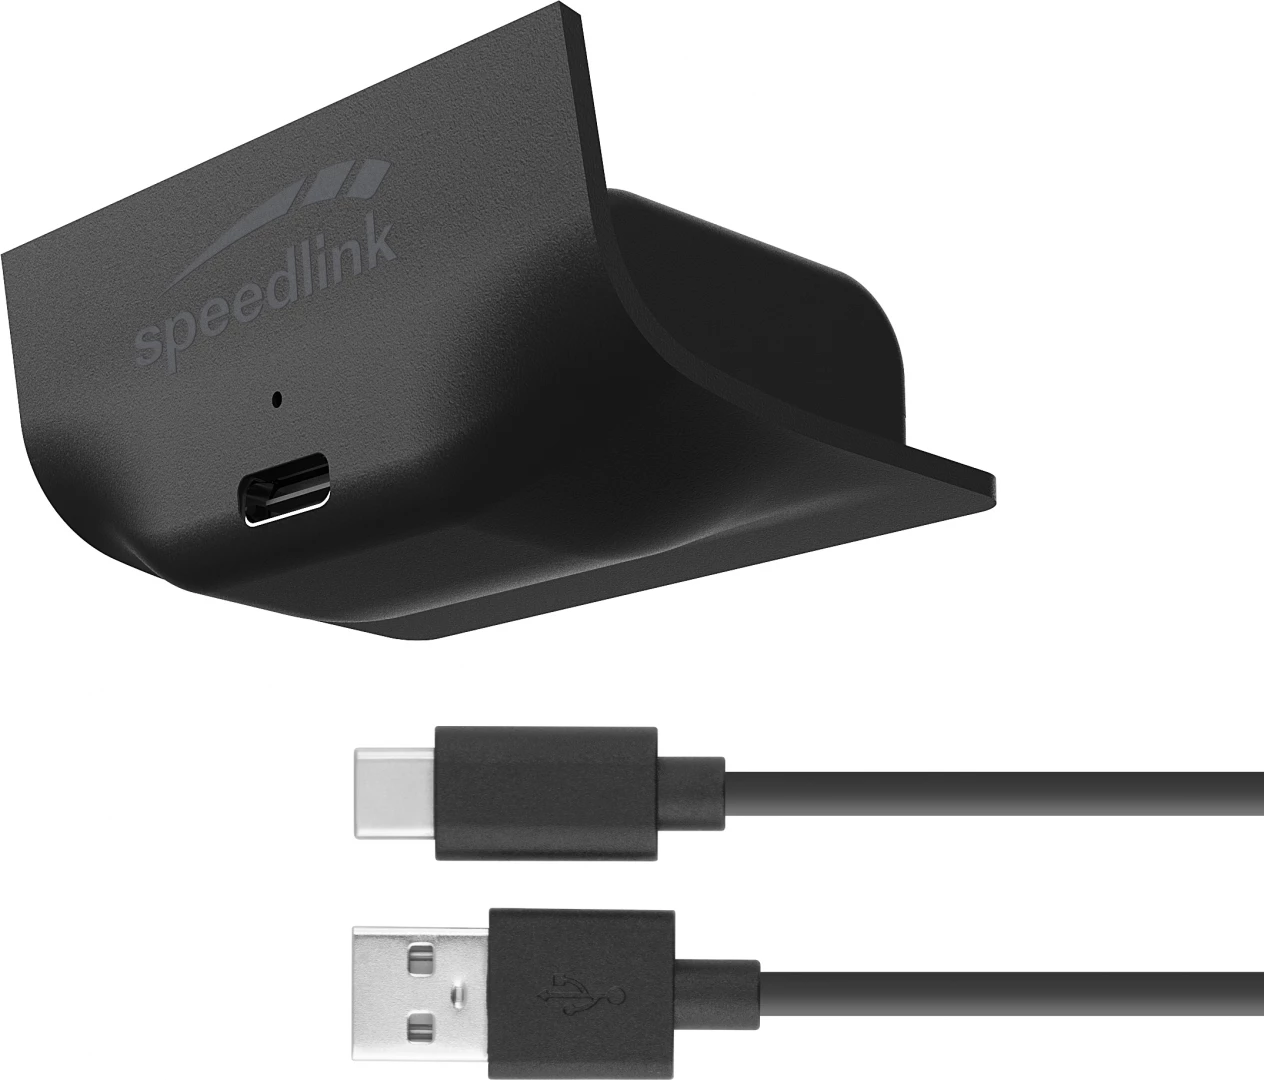 Speedlink Pulse X Play & Charge Kit (Black) voor de Xbox Series S/X kopen op nedgame.nl